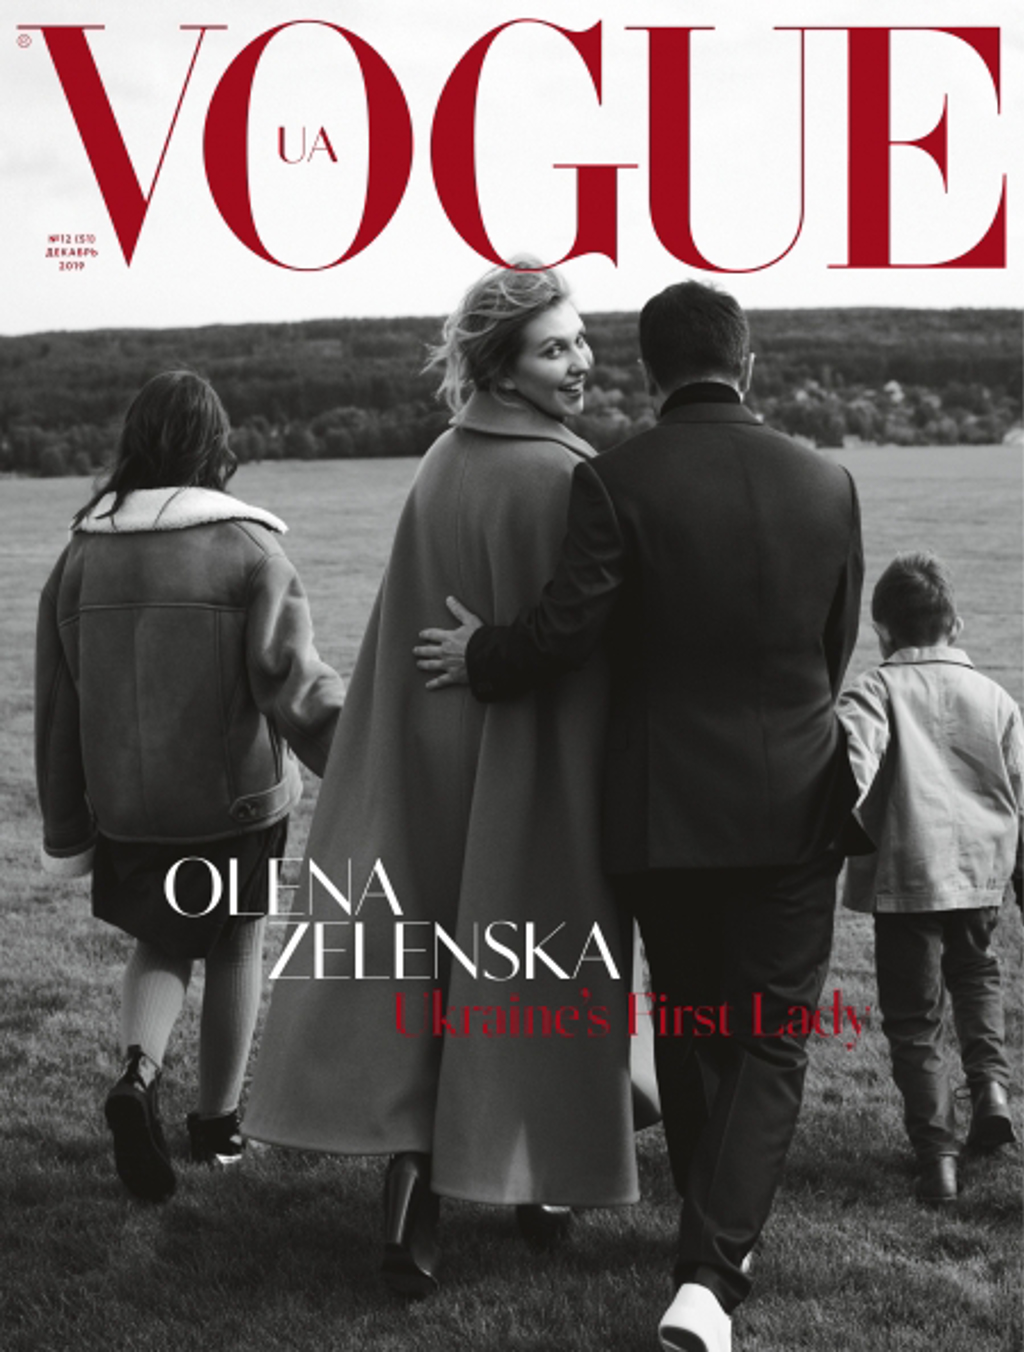 澤倫斯基第一家庭曾登上時尚雜誌封面（圖/VOGUE）